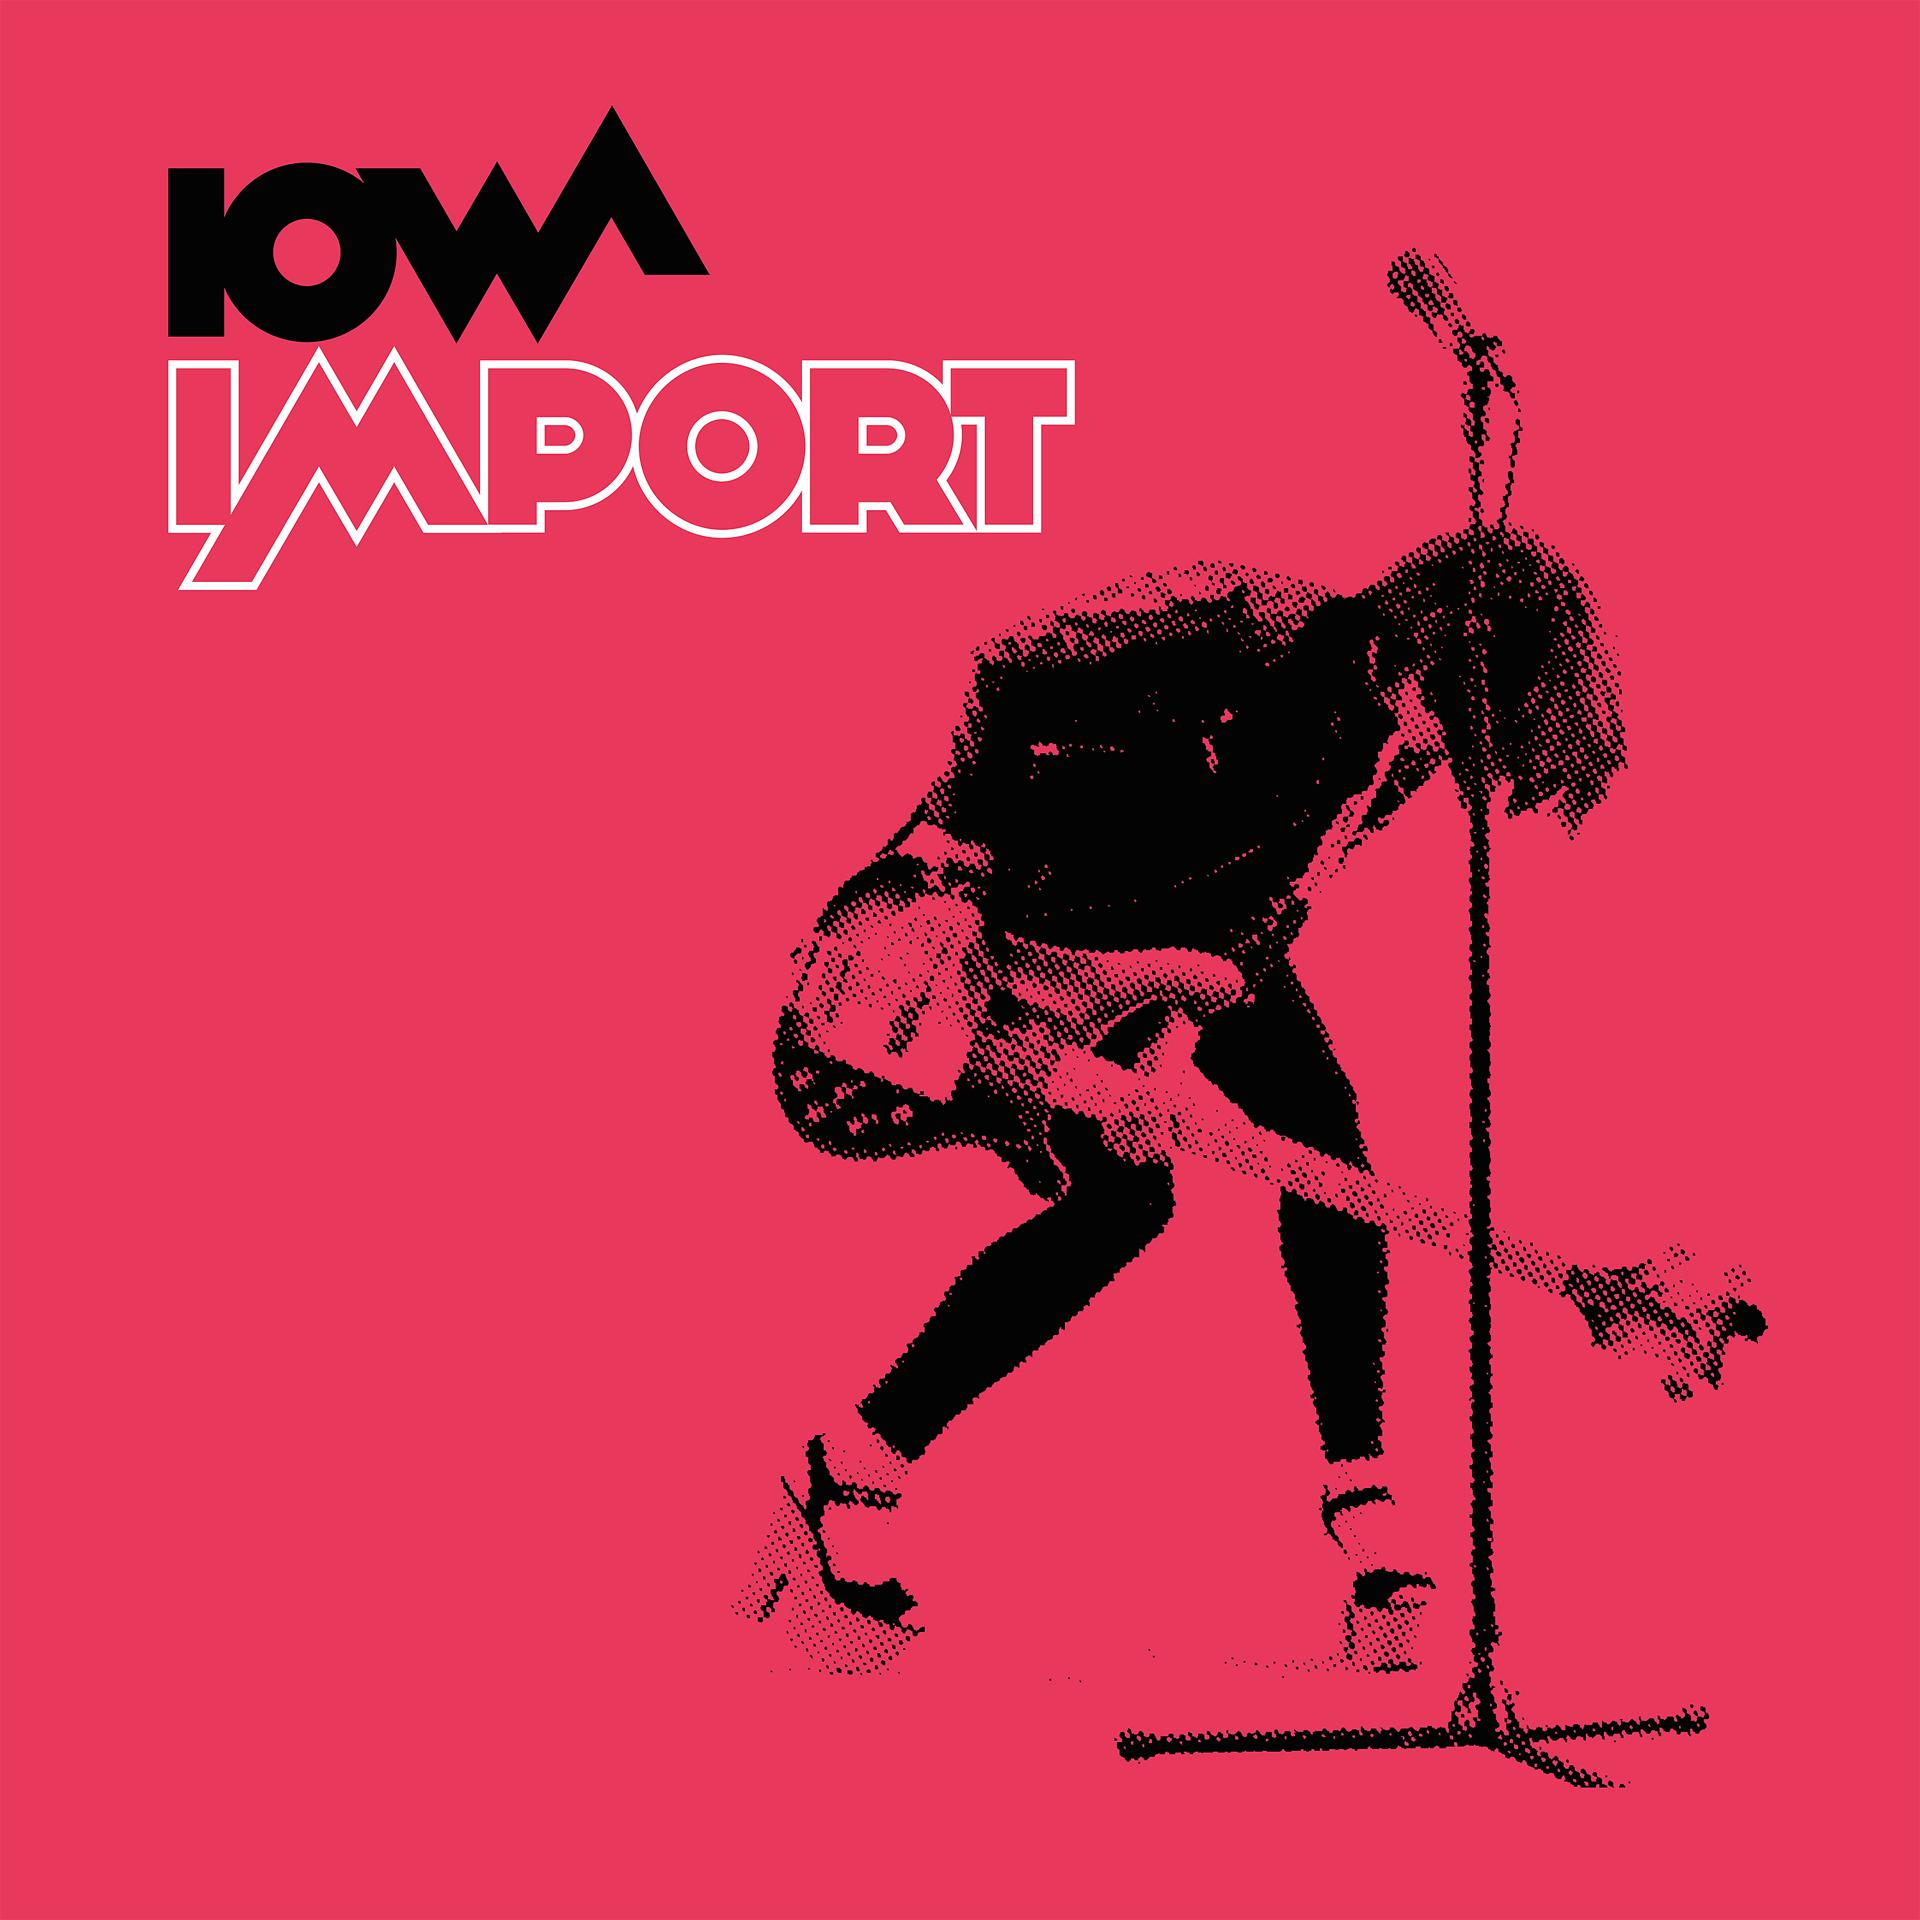 Iowa обложка. Обложка трека Iowa - 140. Iowa "Import". Современные обложки альбомов.